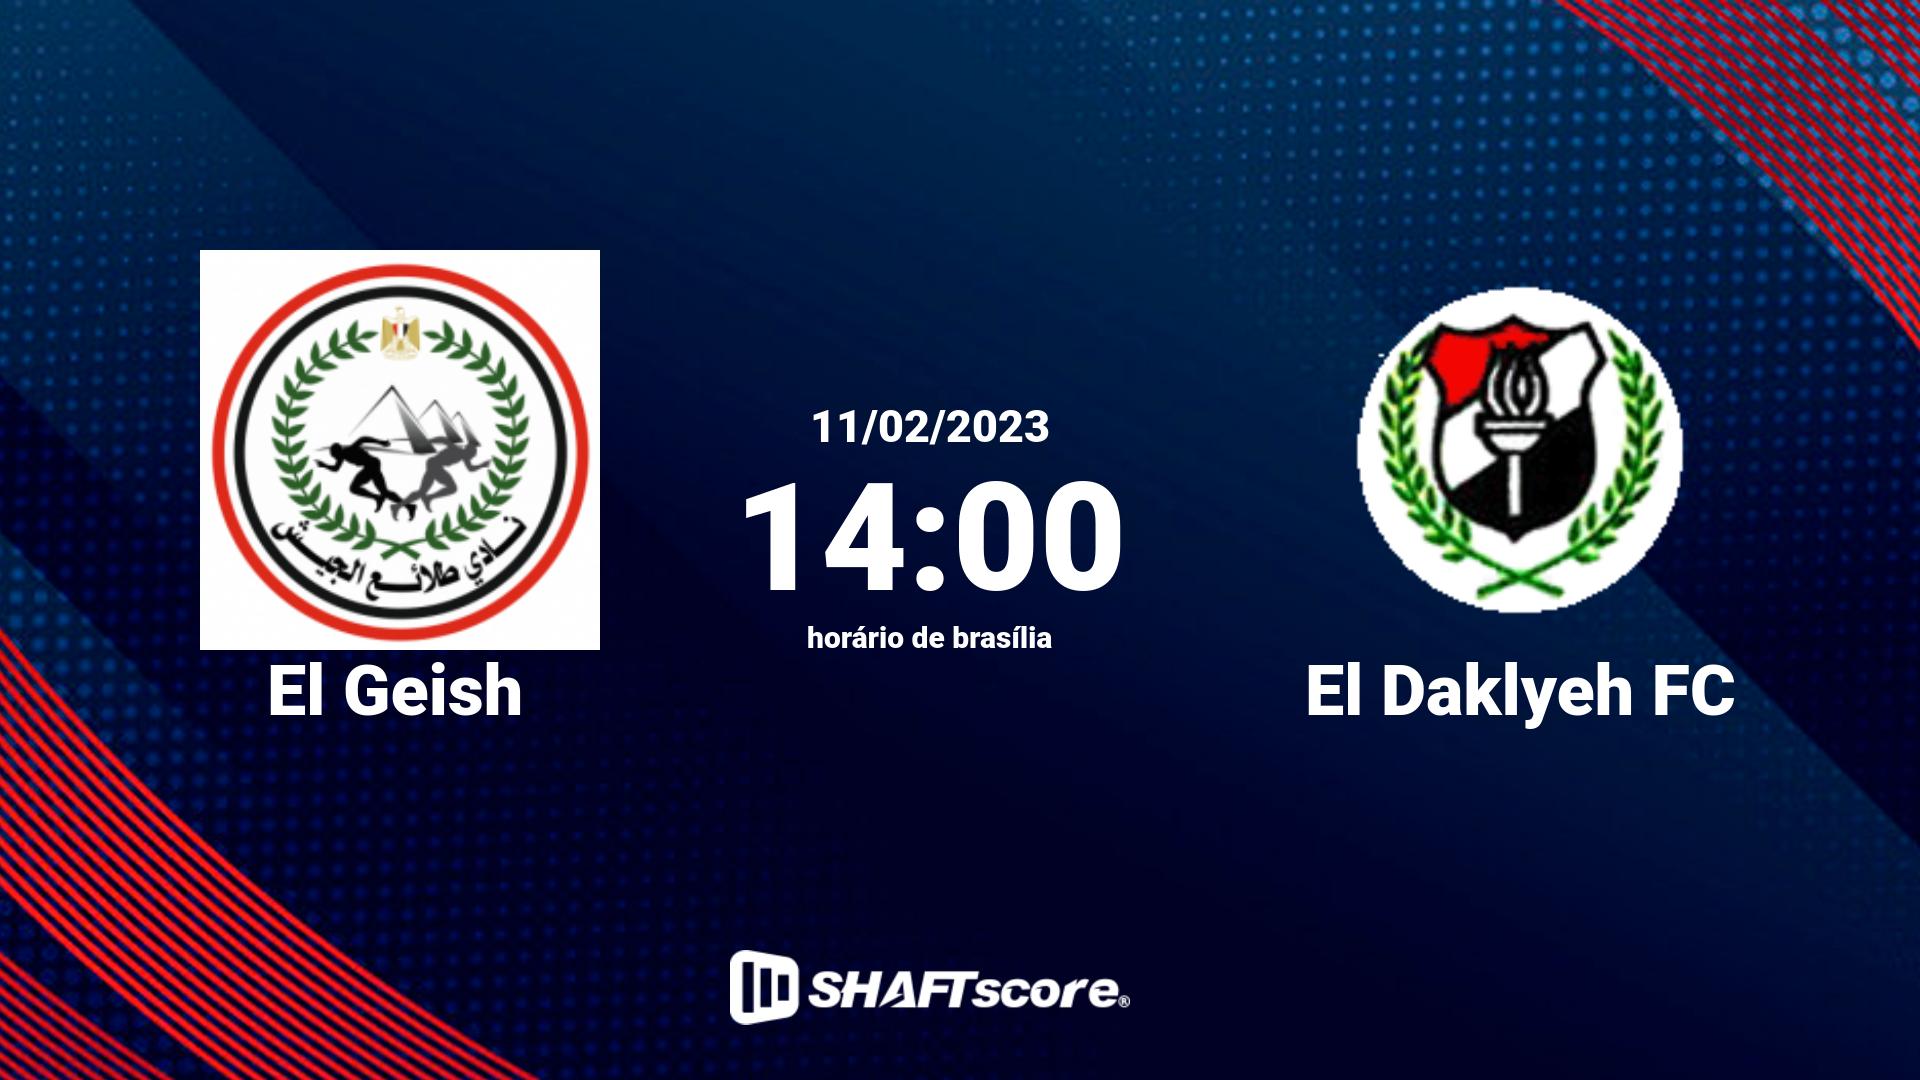 Estatísticas do jogo El Geish vs El Daklyeh FC 11.02 14:00